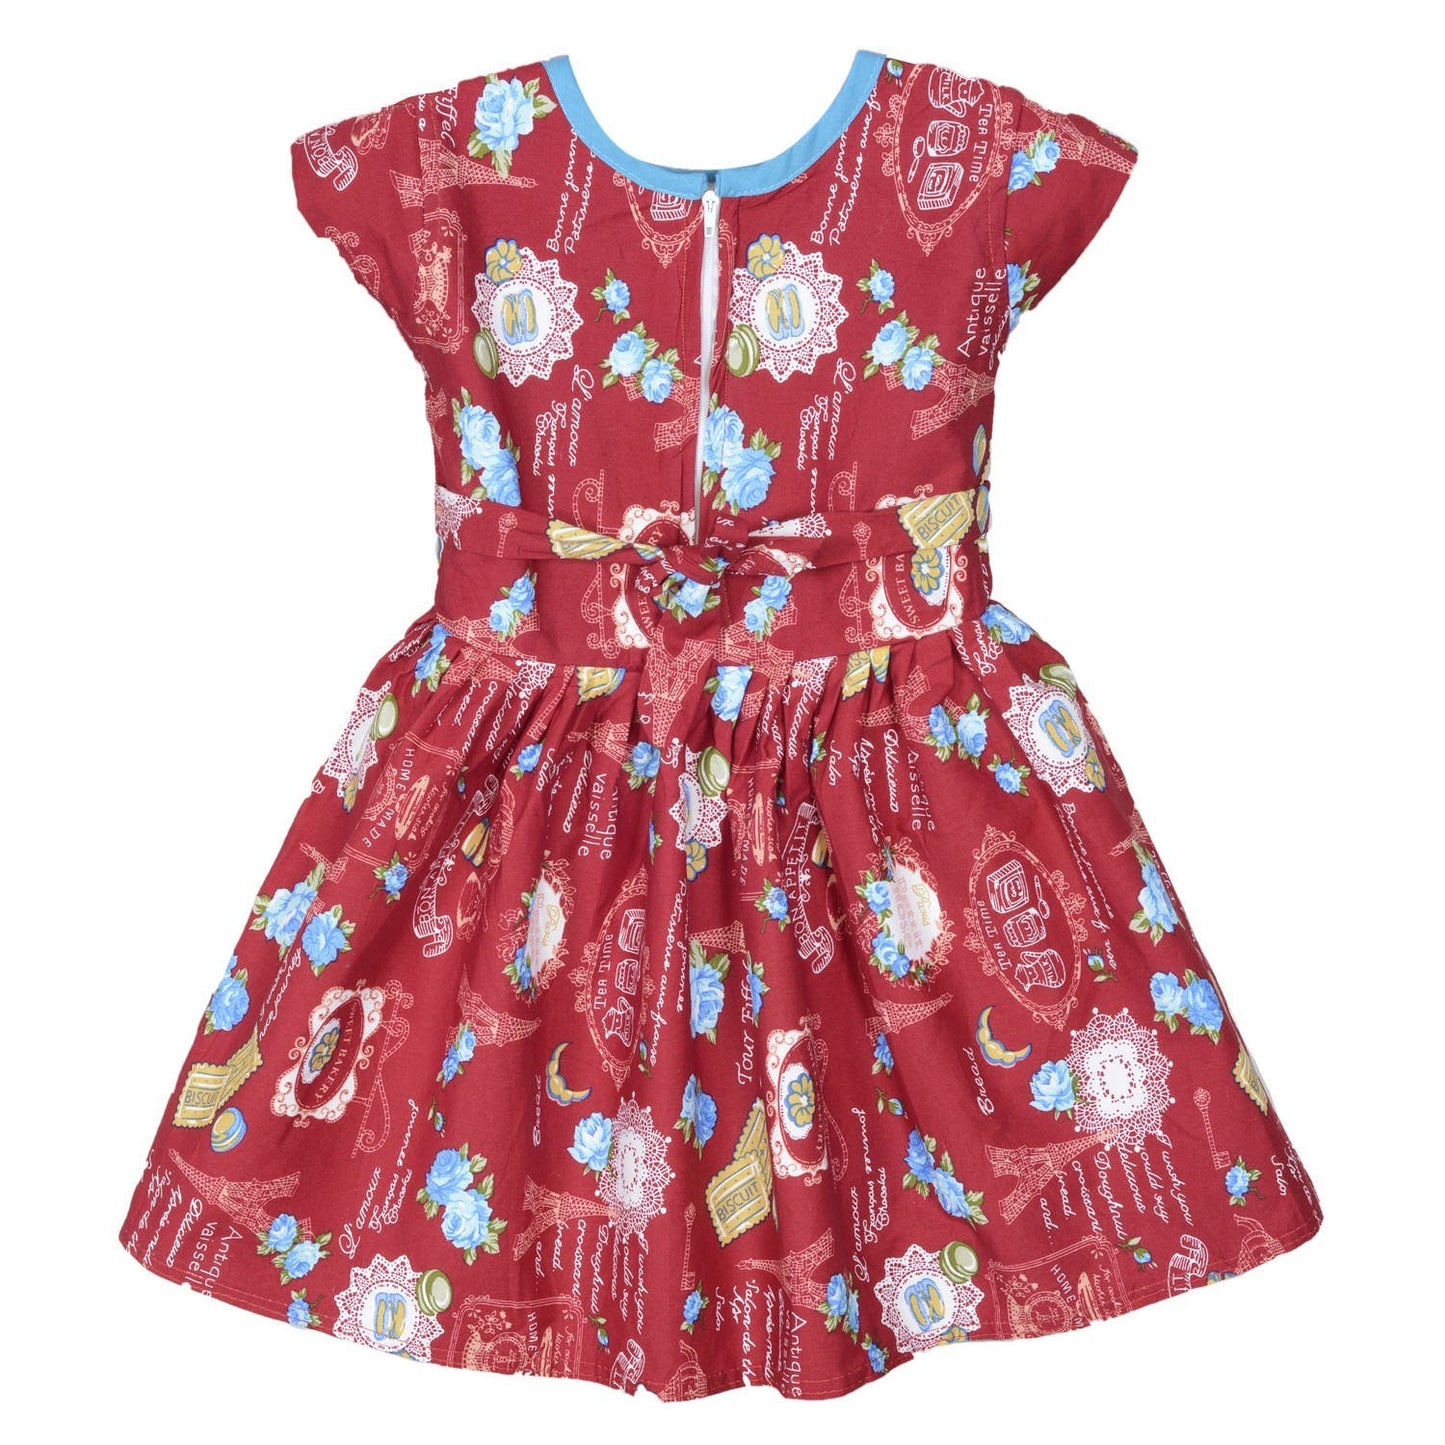 Baby Girls Party Wear Frock Dress ctn260rd - Wish Karo Cotton Wear - frocks Cotton Wear - baby dress